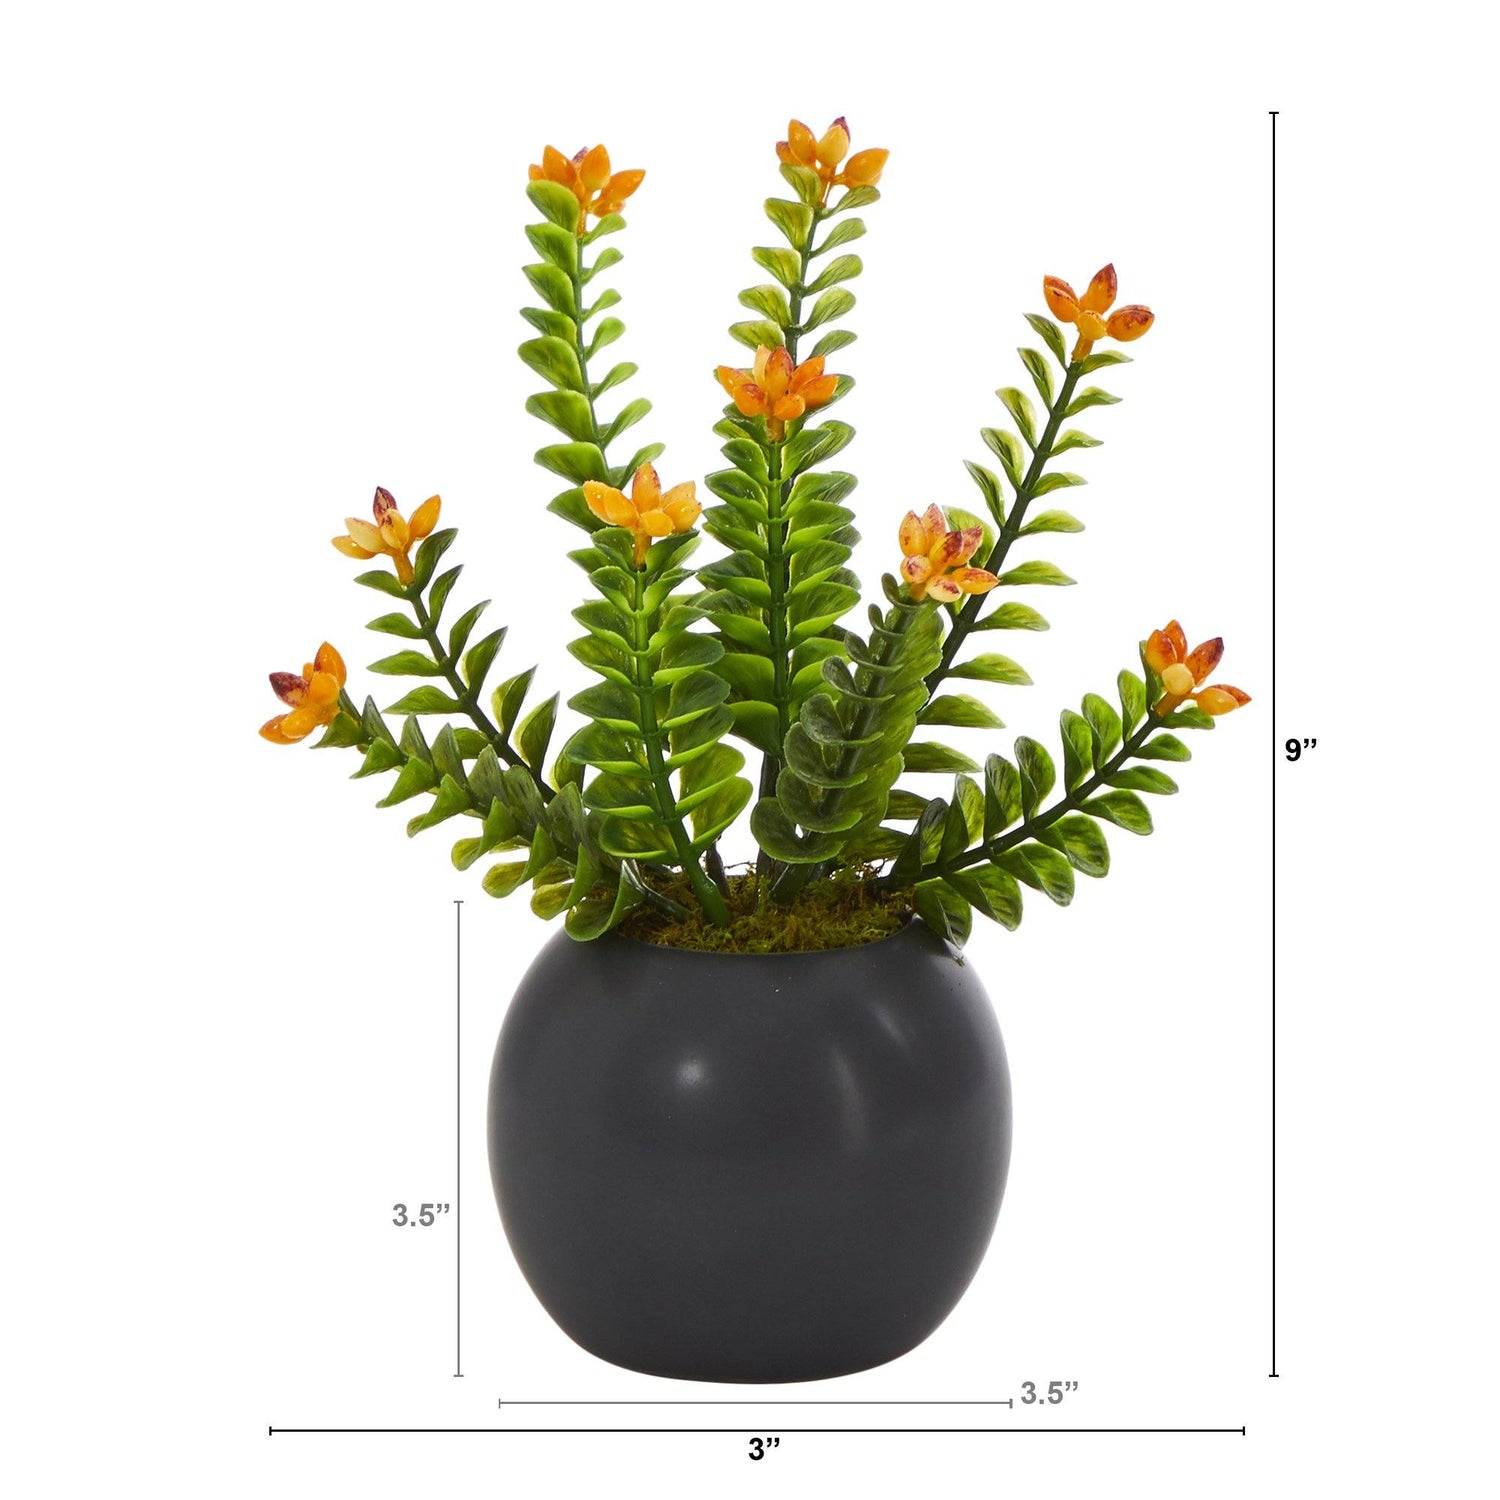 9” Flowering Sedum Succulent Artificial Plant in Black Planter